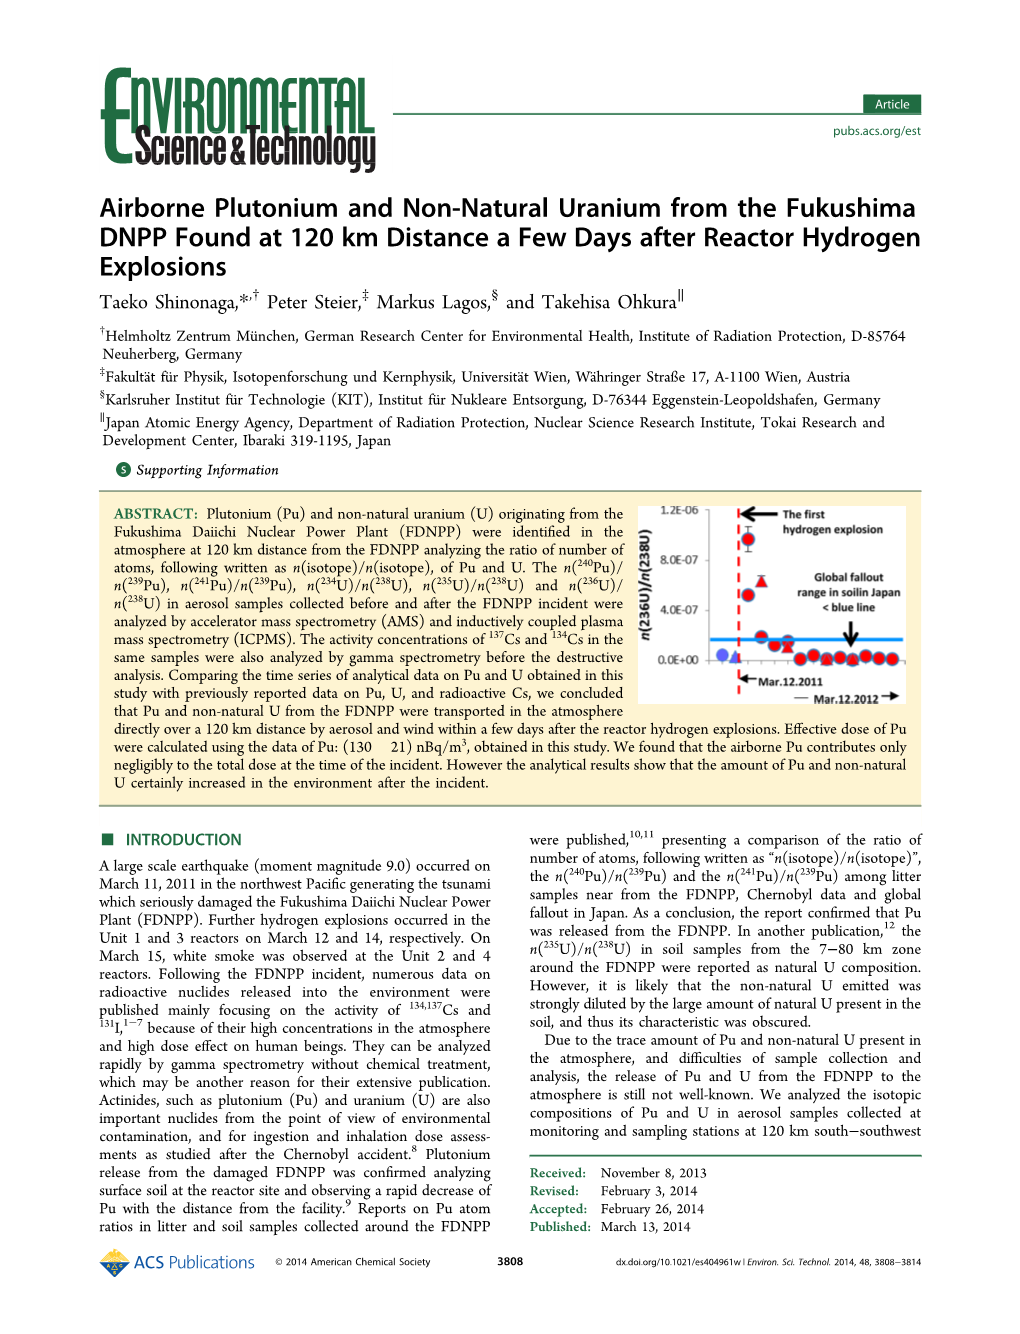 Airborne Plutonium and Non-Natural Uranium from the Fukushima DNPP